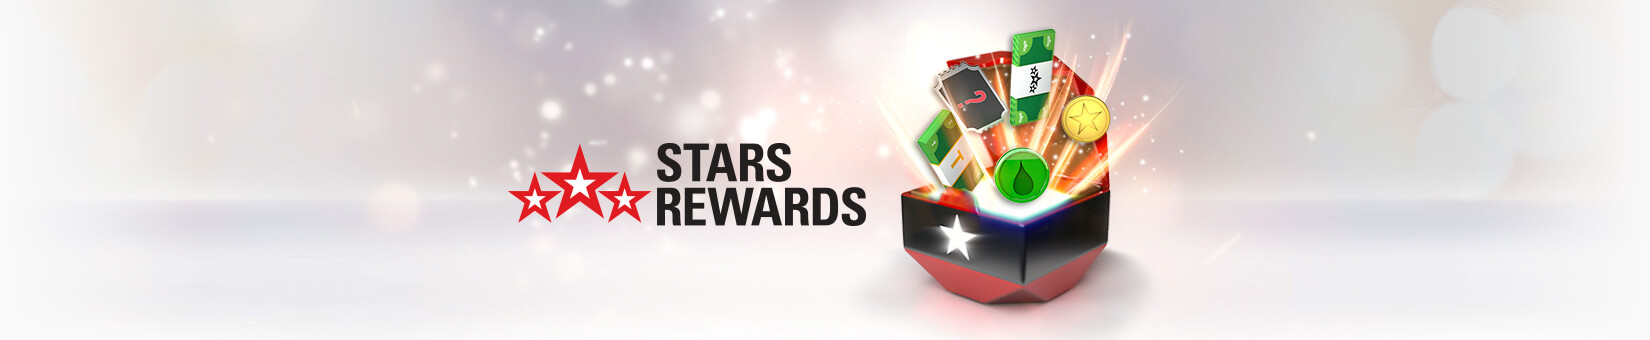 Casino Rewards Erfahrungen - 99988